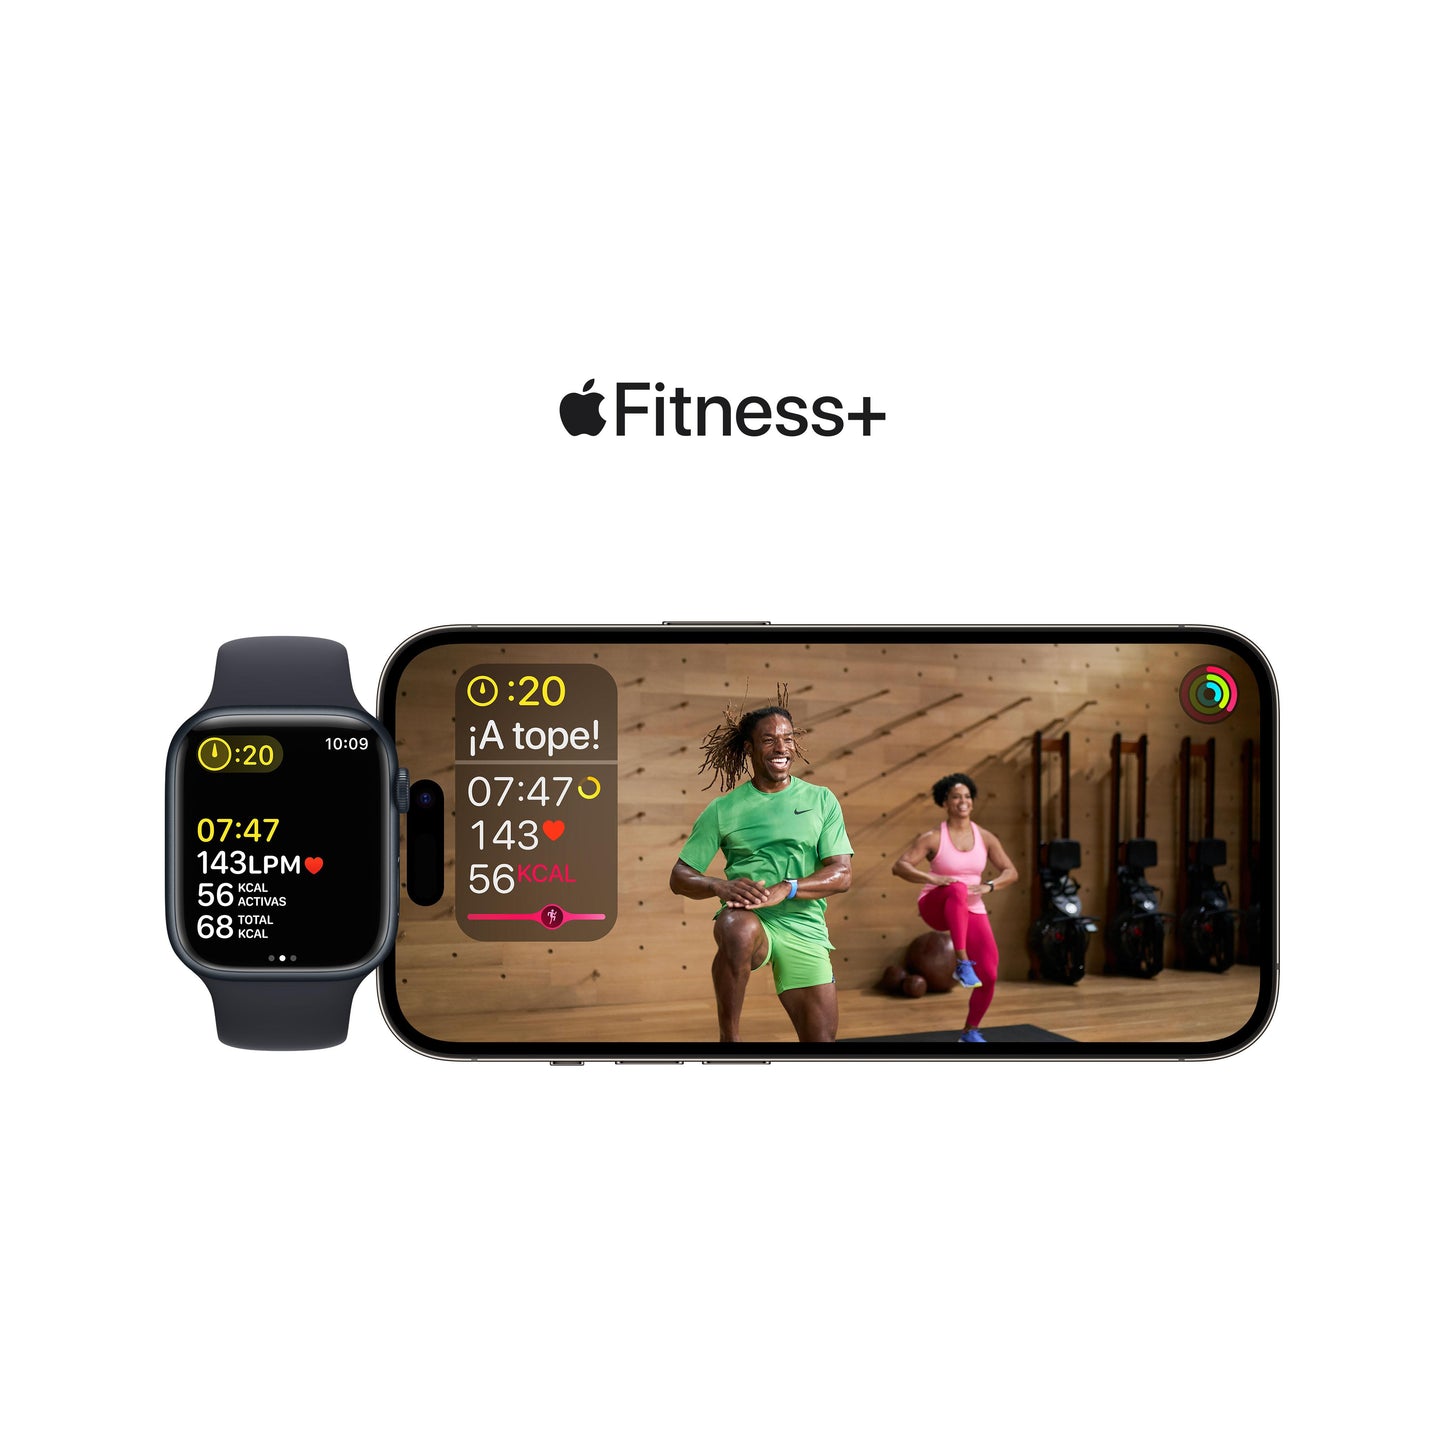 Apple Watch SE (GPS) - Caja de aluminio en color medianoche de 44 mm - Correa deportiva en color medianoche - Talla única